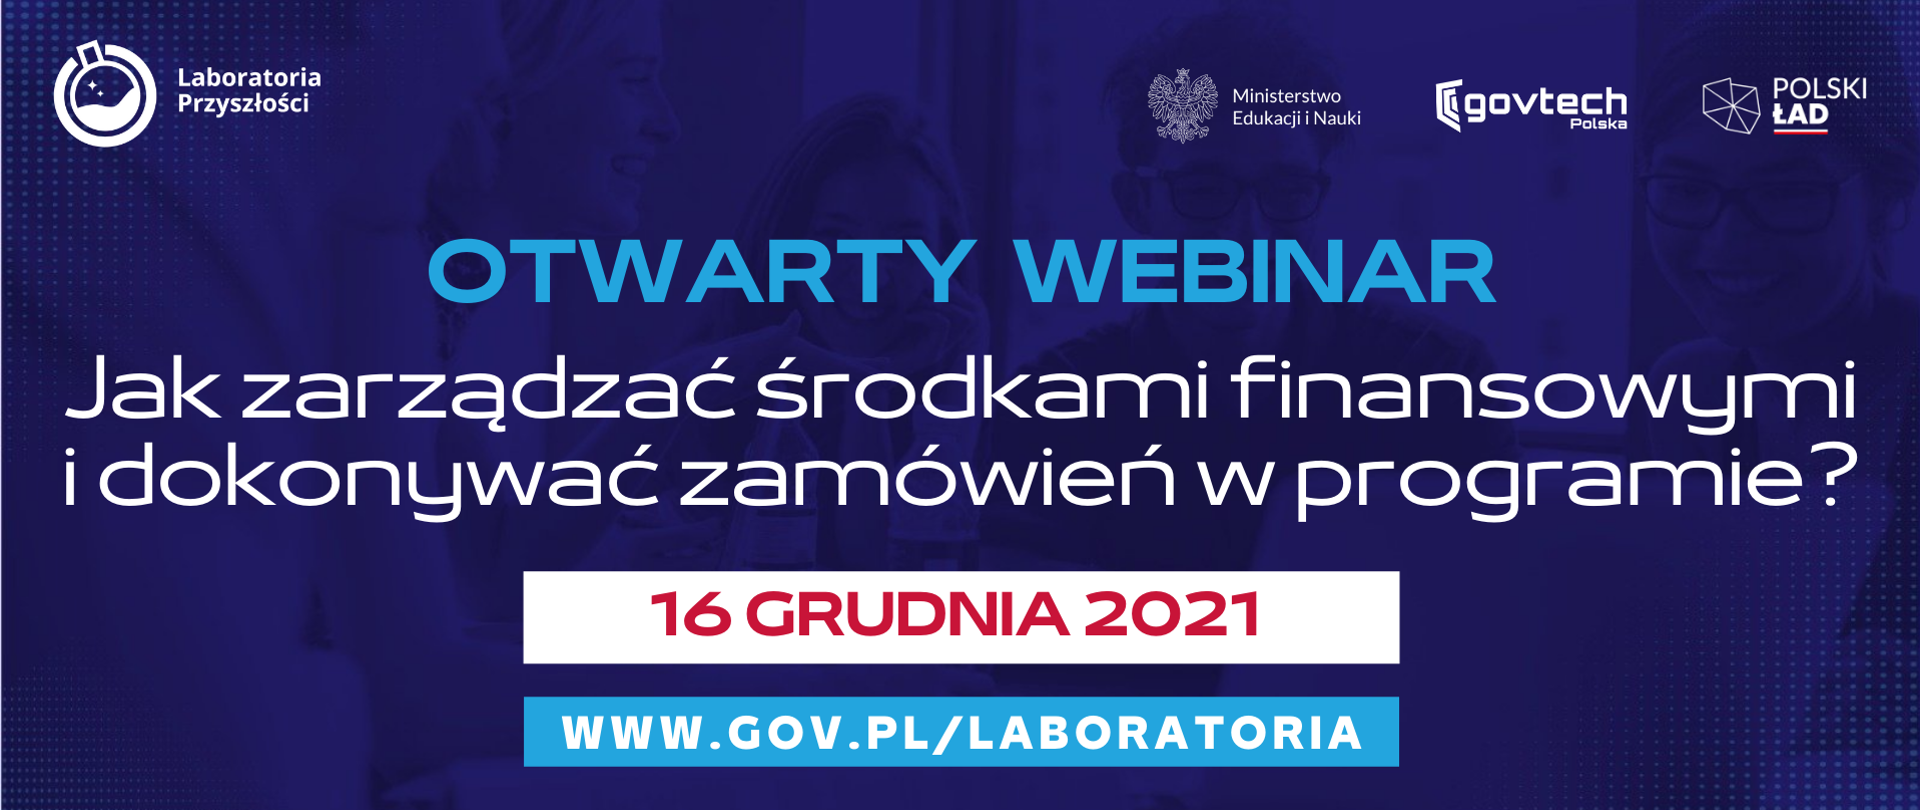 Otwarty webinar
Jak zarządzać środkami finansowymi i dokonywać zamówień w programie?
16 grudnia 2021
www.gov.pl/laboratoria